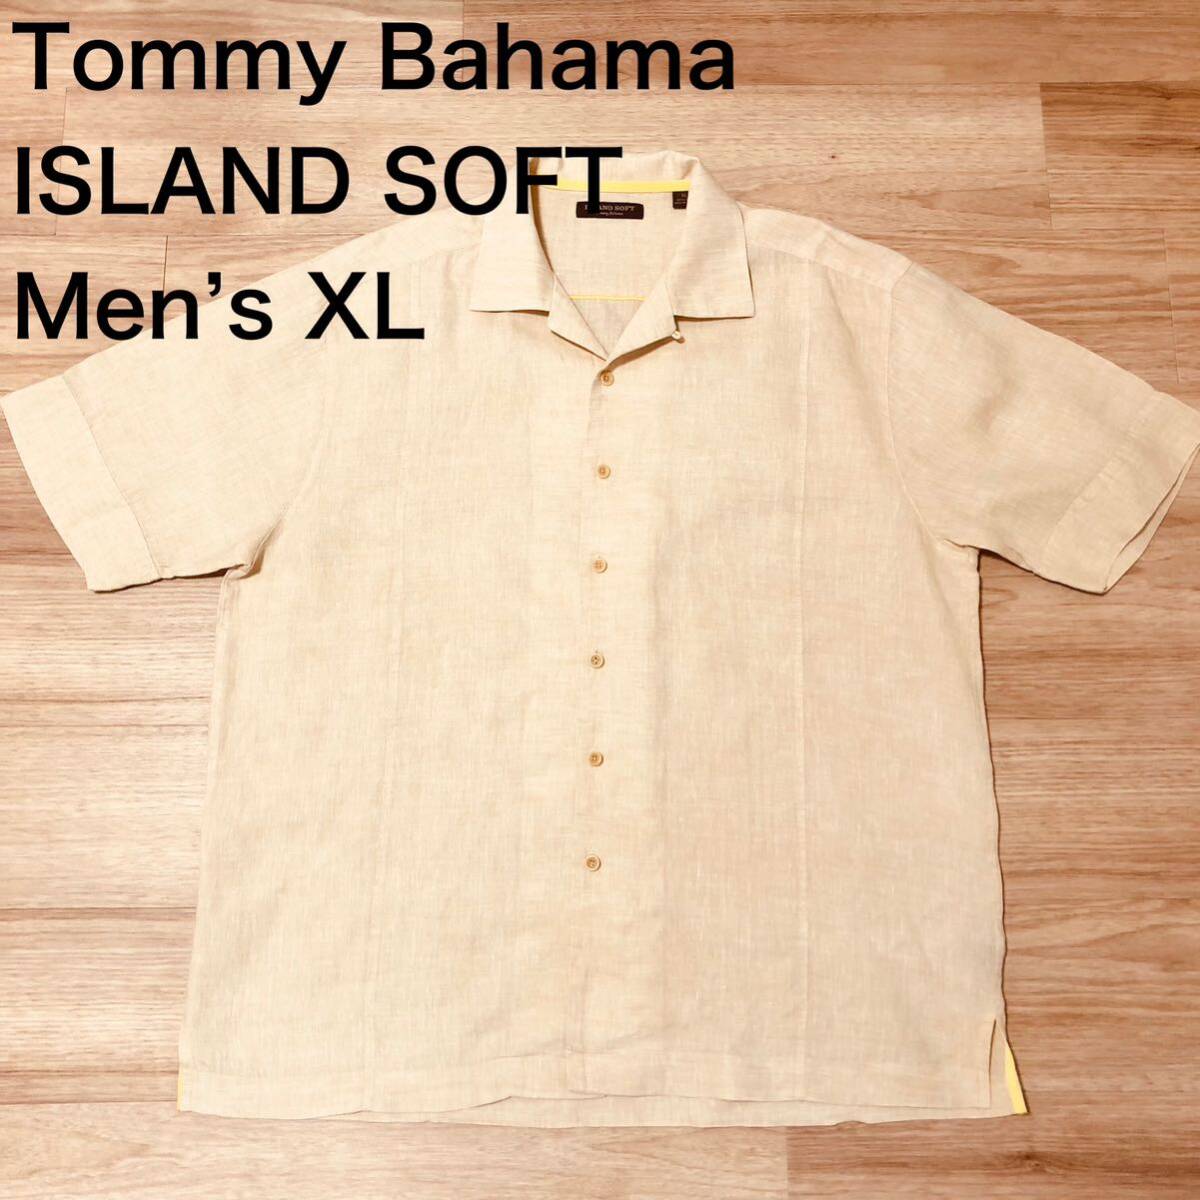 【送料無料】Tommy Bahama ISLAND SOFTリネン100%アロハシャツ ベージュ メンズXLサイズ トミーバハマハワイアン麻半袖シャツの画像1